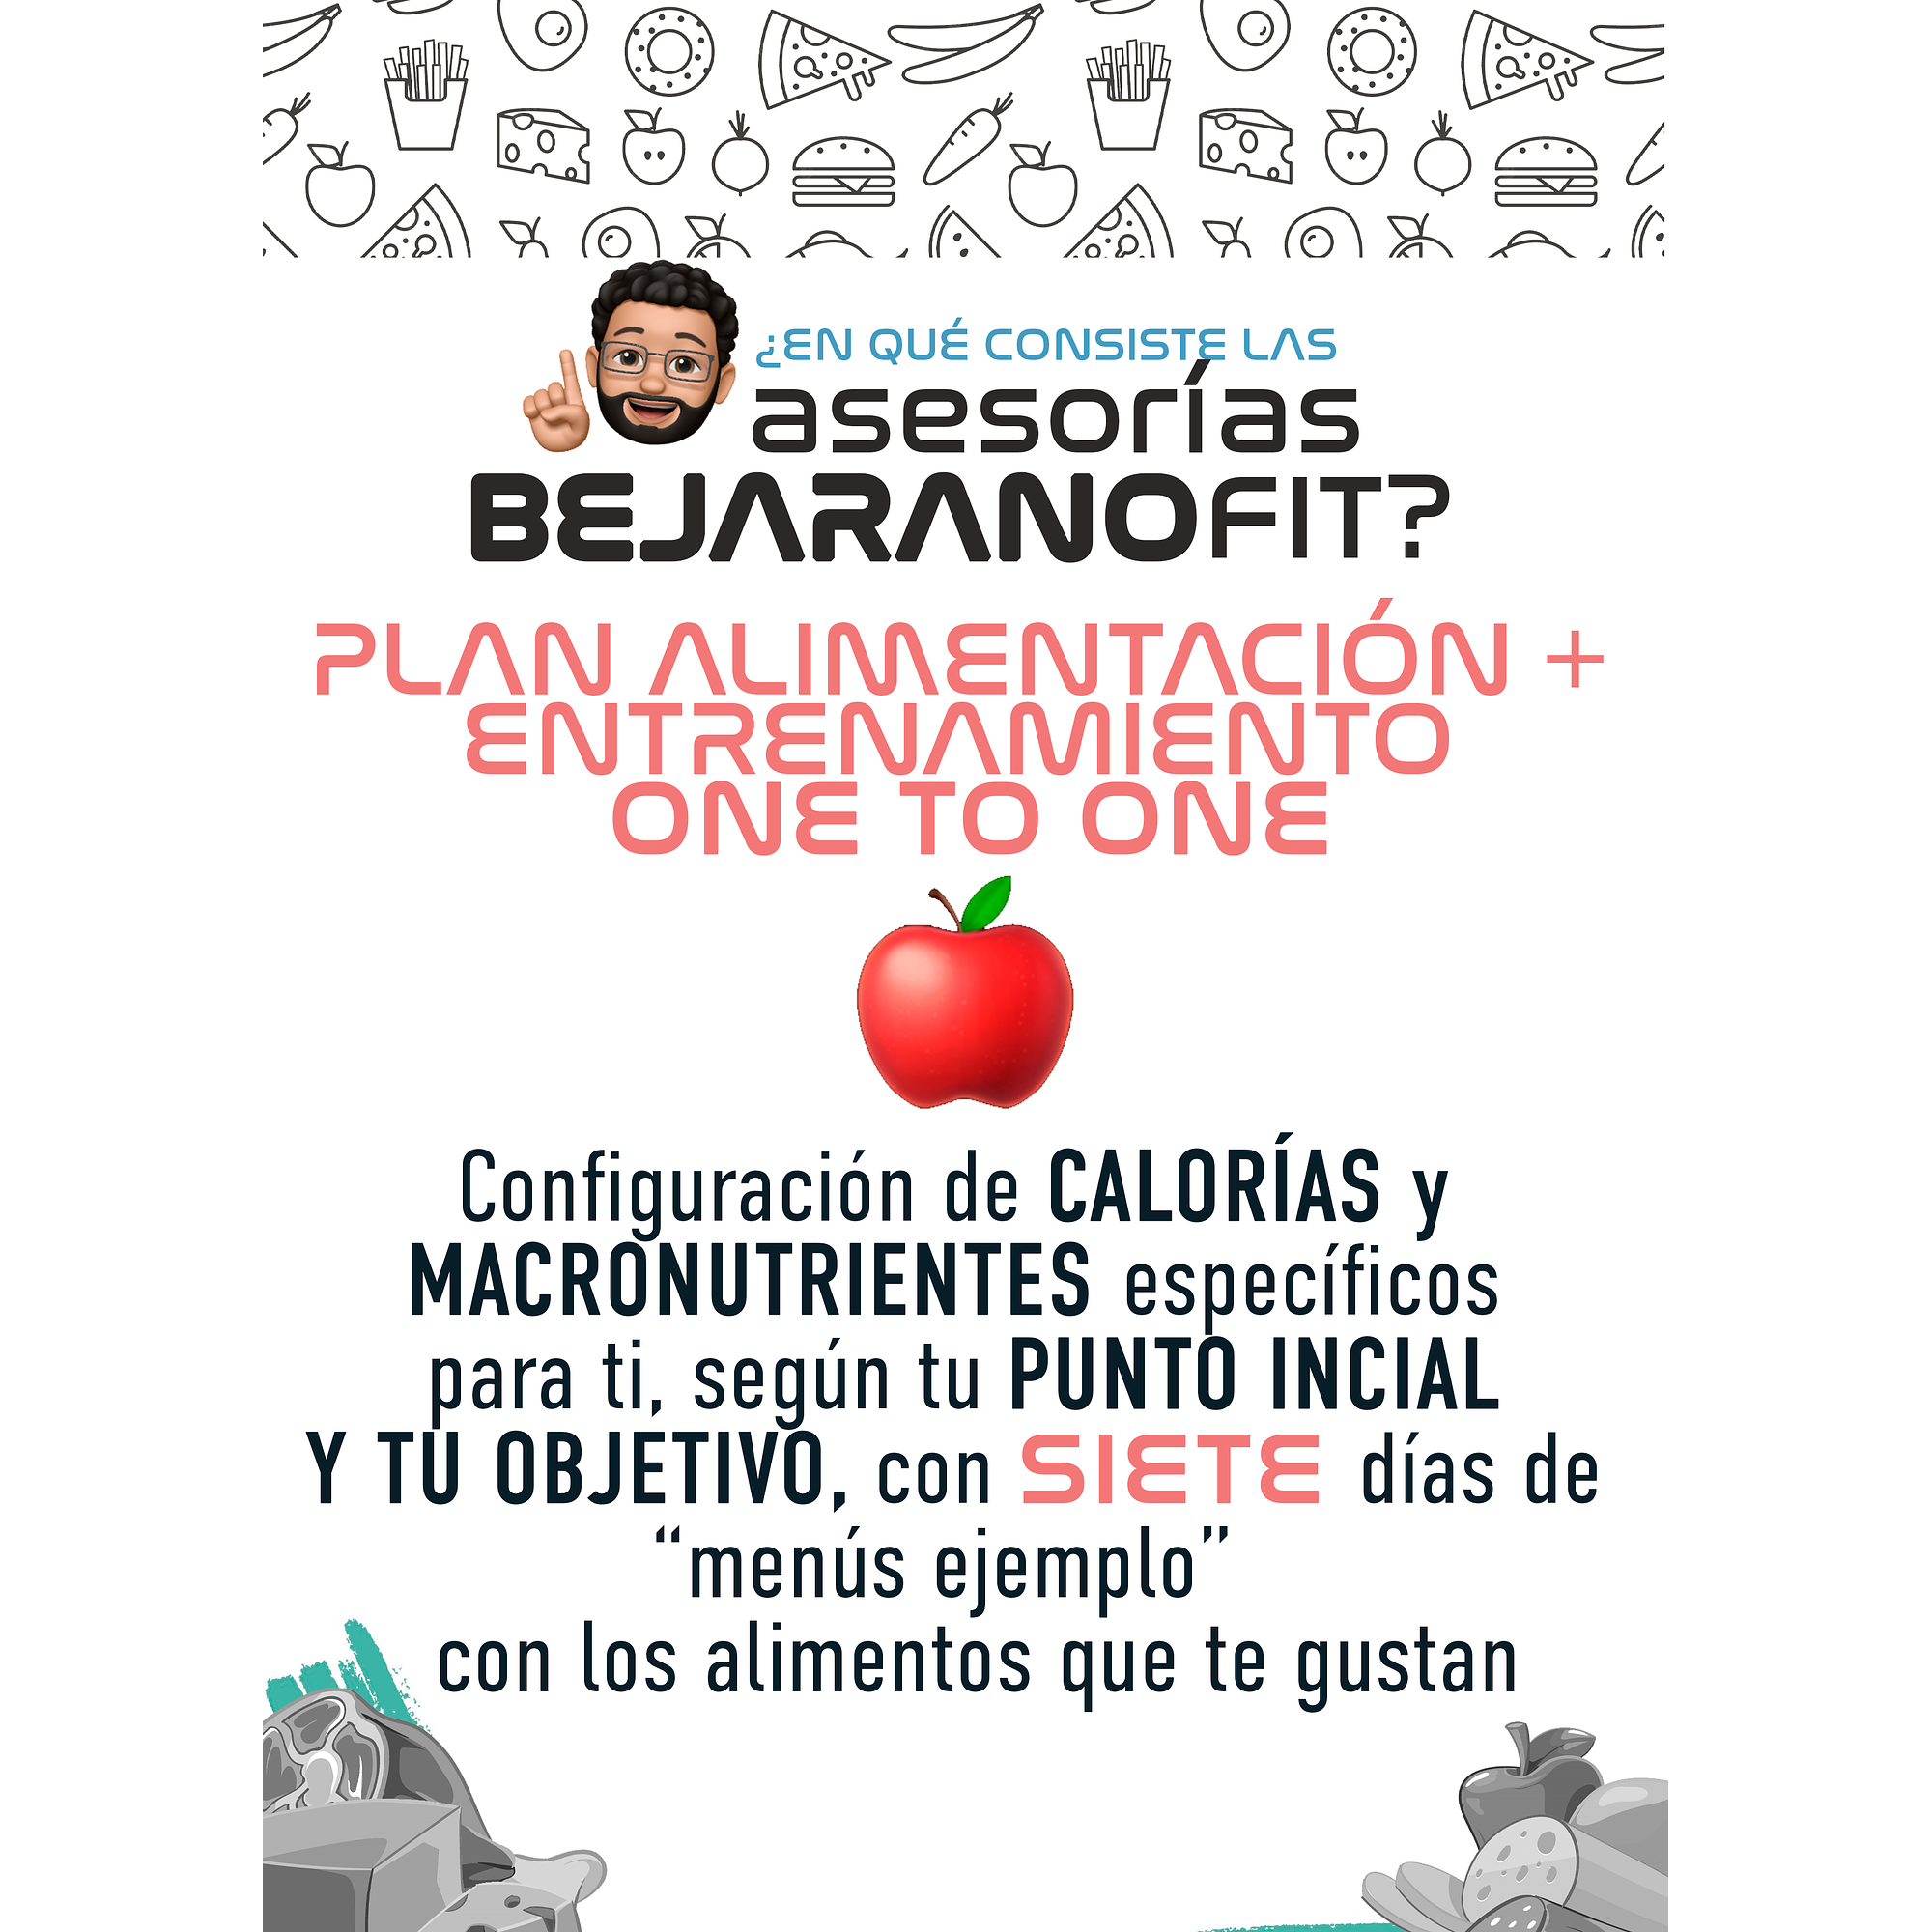 Plan ONE TO ONE de Entrenamiento + Nutrición - Image 3